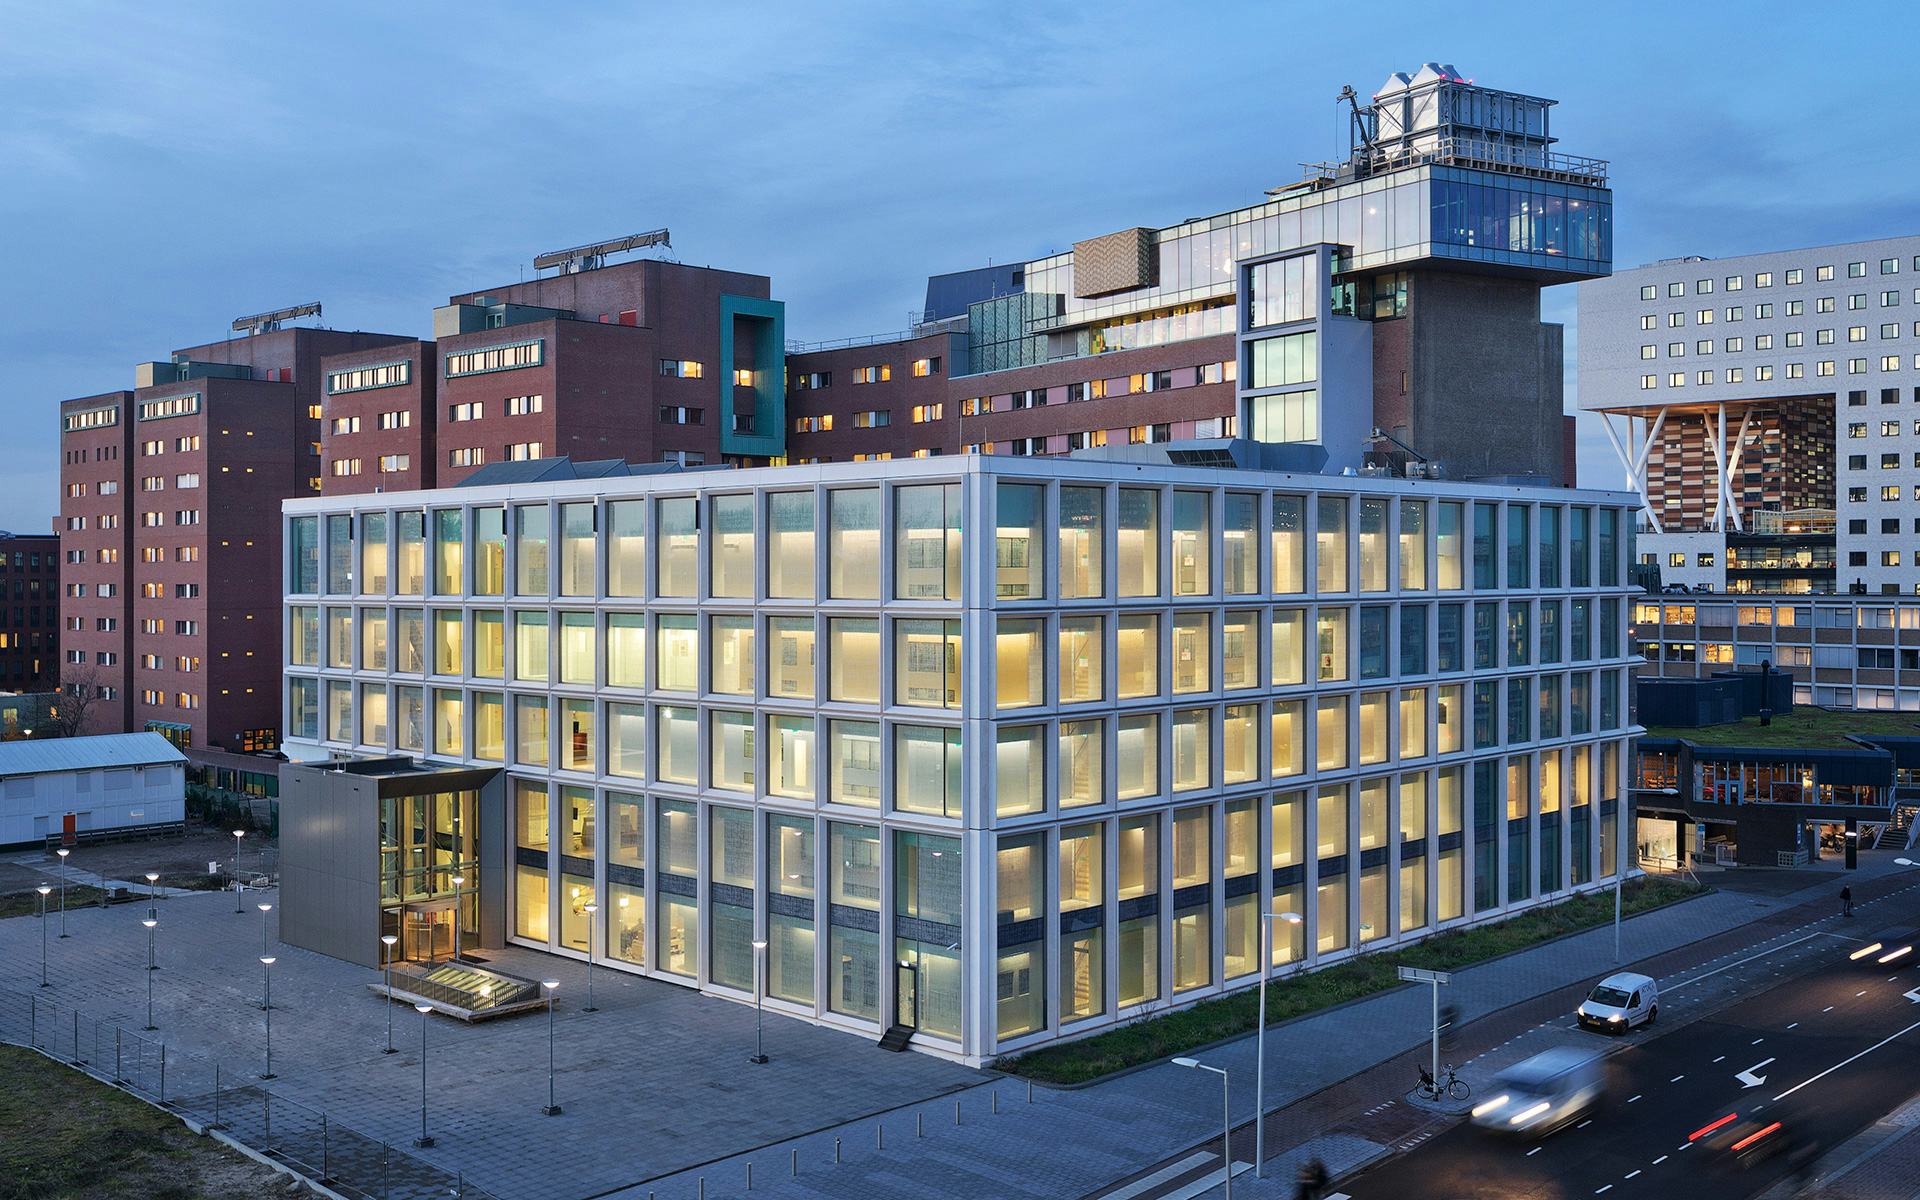 Amsterdam UMC Imaging Center gelegen naast en verbonden met het VUmc ziekenhuis